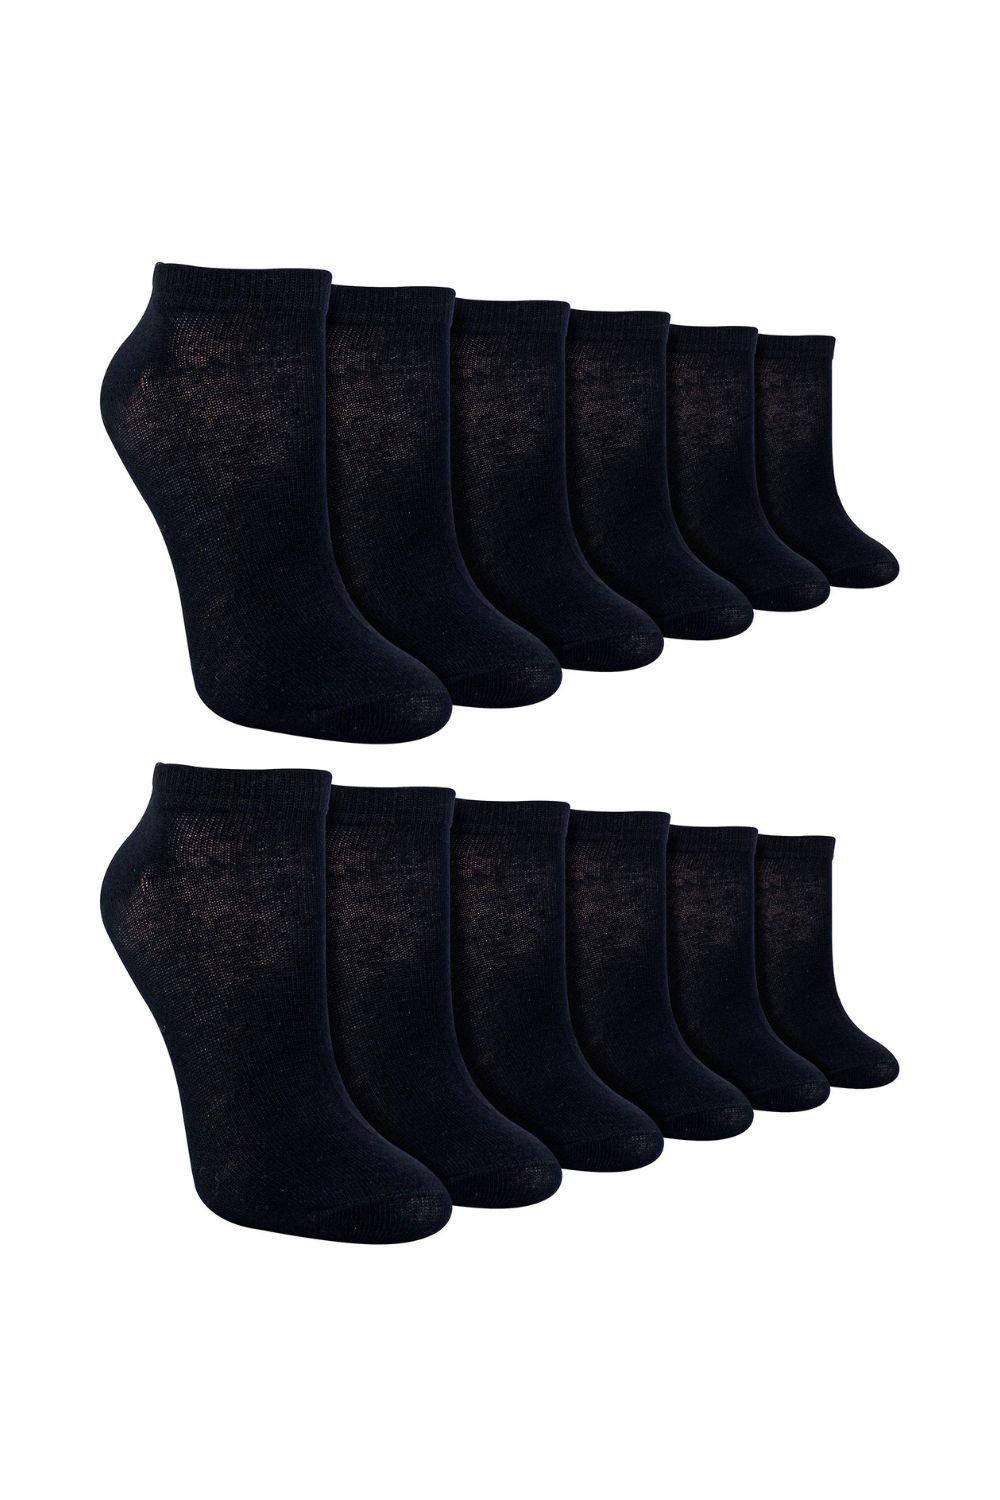 12 Pair Multipack Trainer Socks - Ankle Bamboo Socks